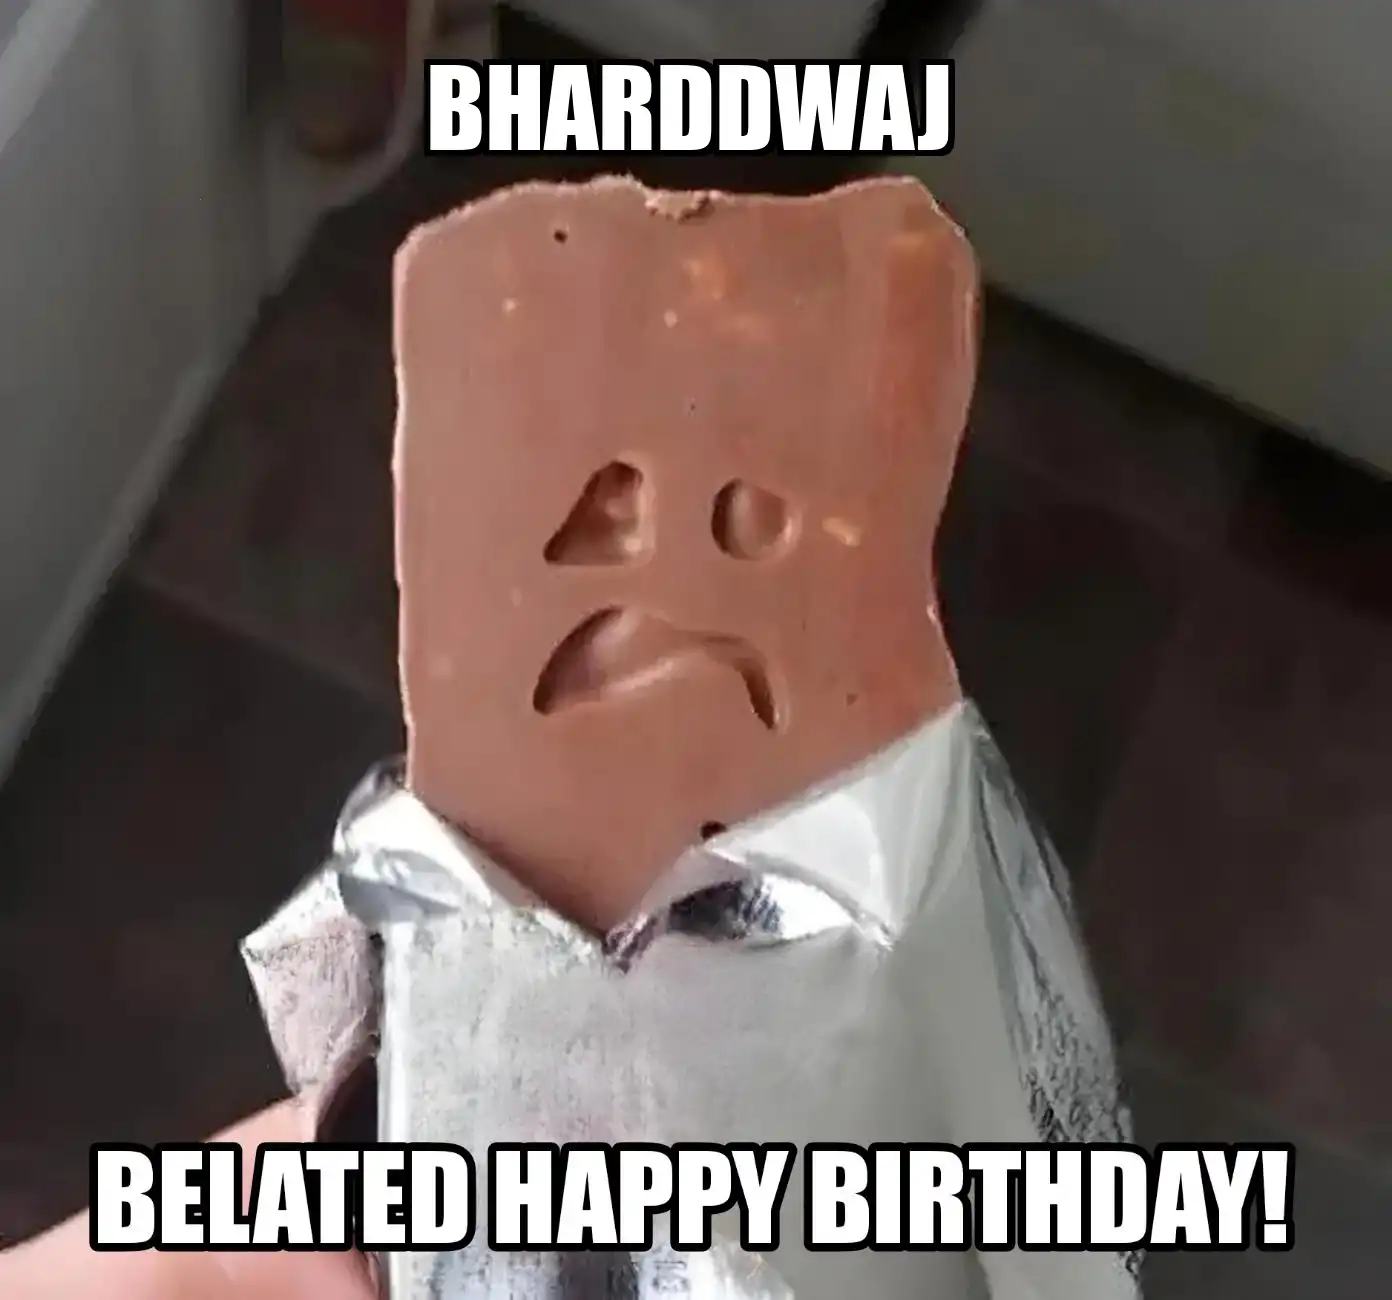 Happy Birthday Bharddwaj Belated Happy Birthday Meme